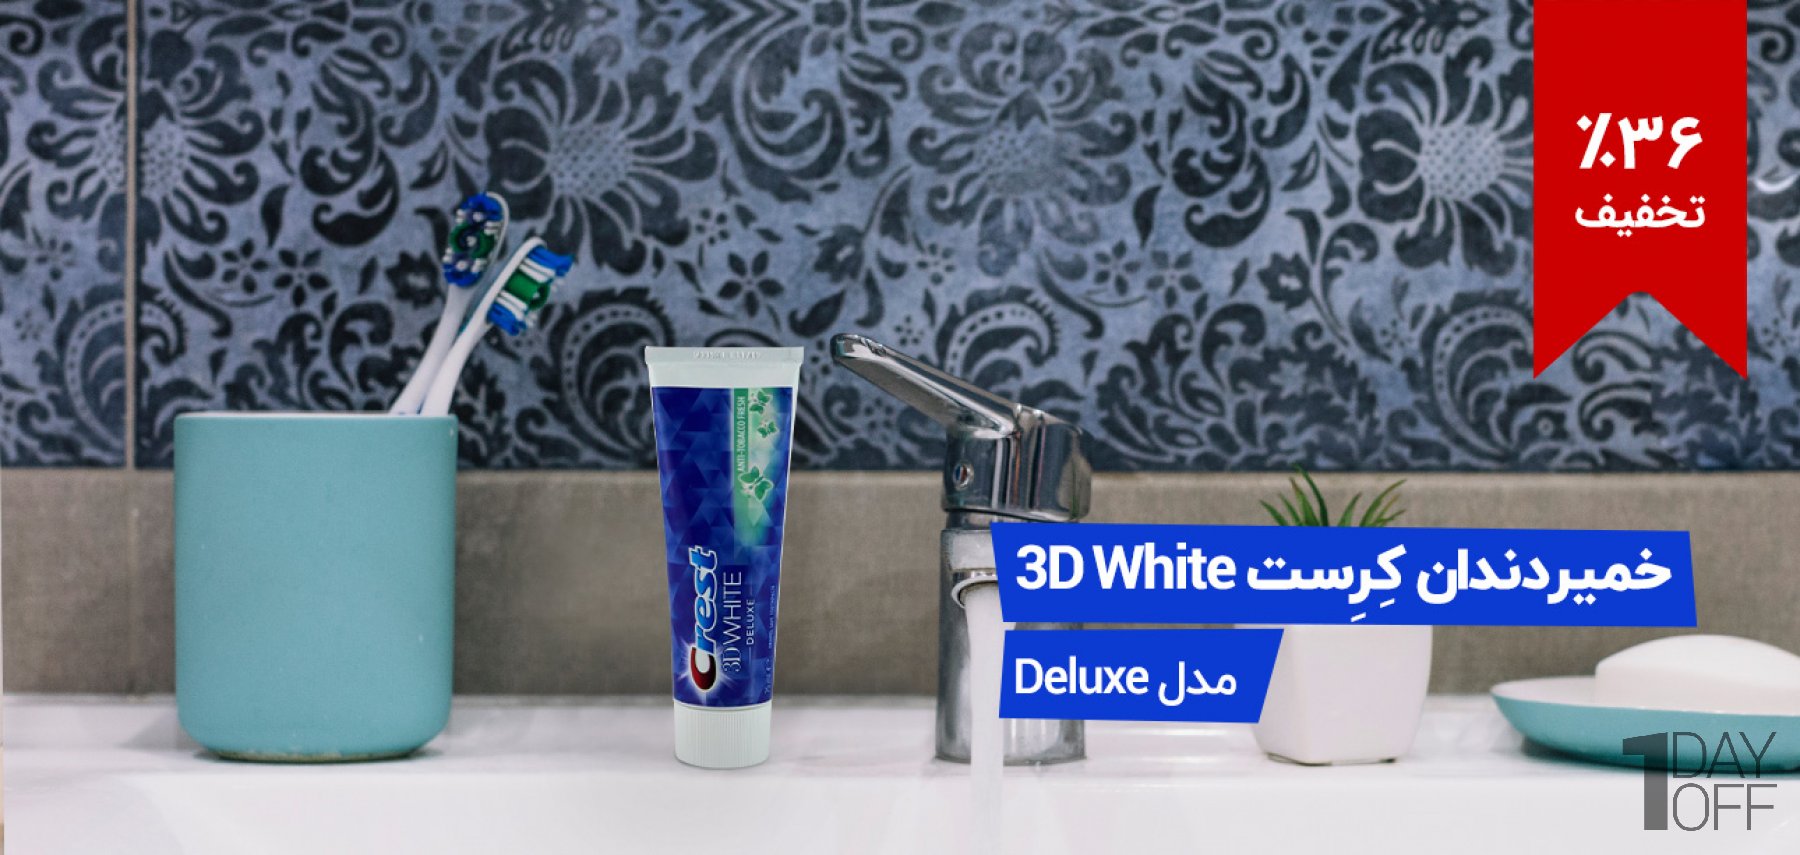 فروش ویژه خمیر دندان کرست سری 3D White مدل Deluxe مدل Deluxe